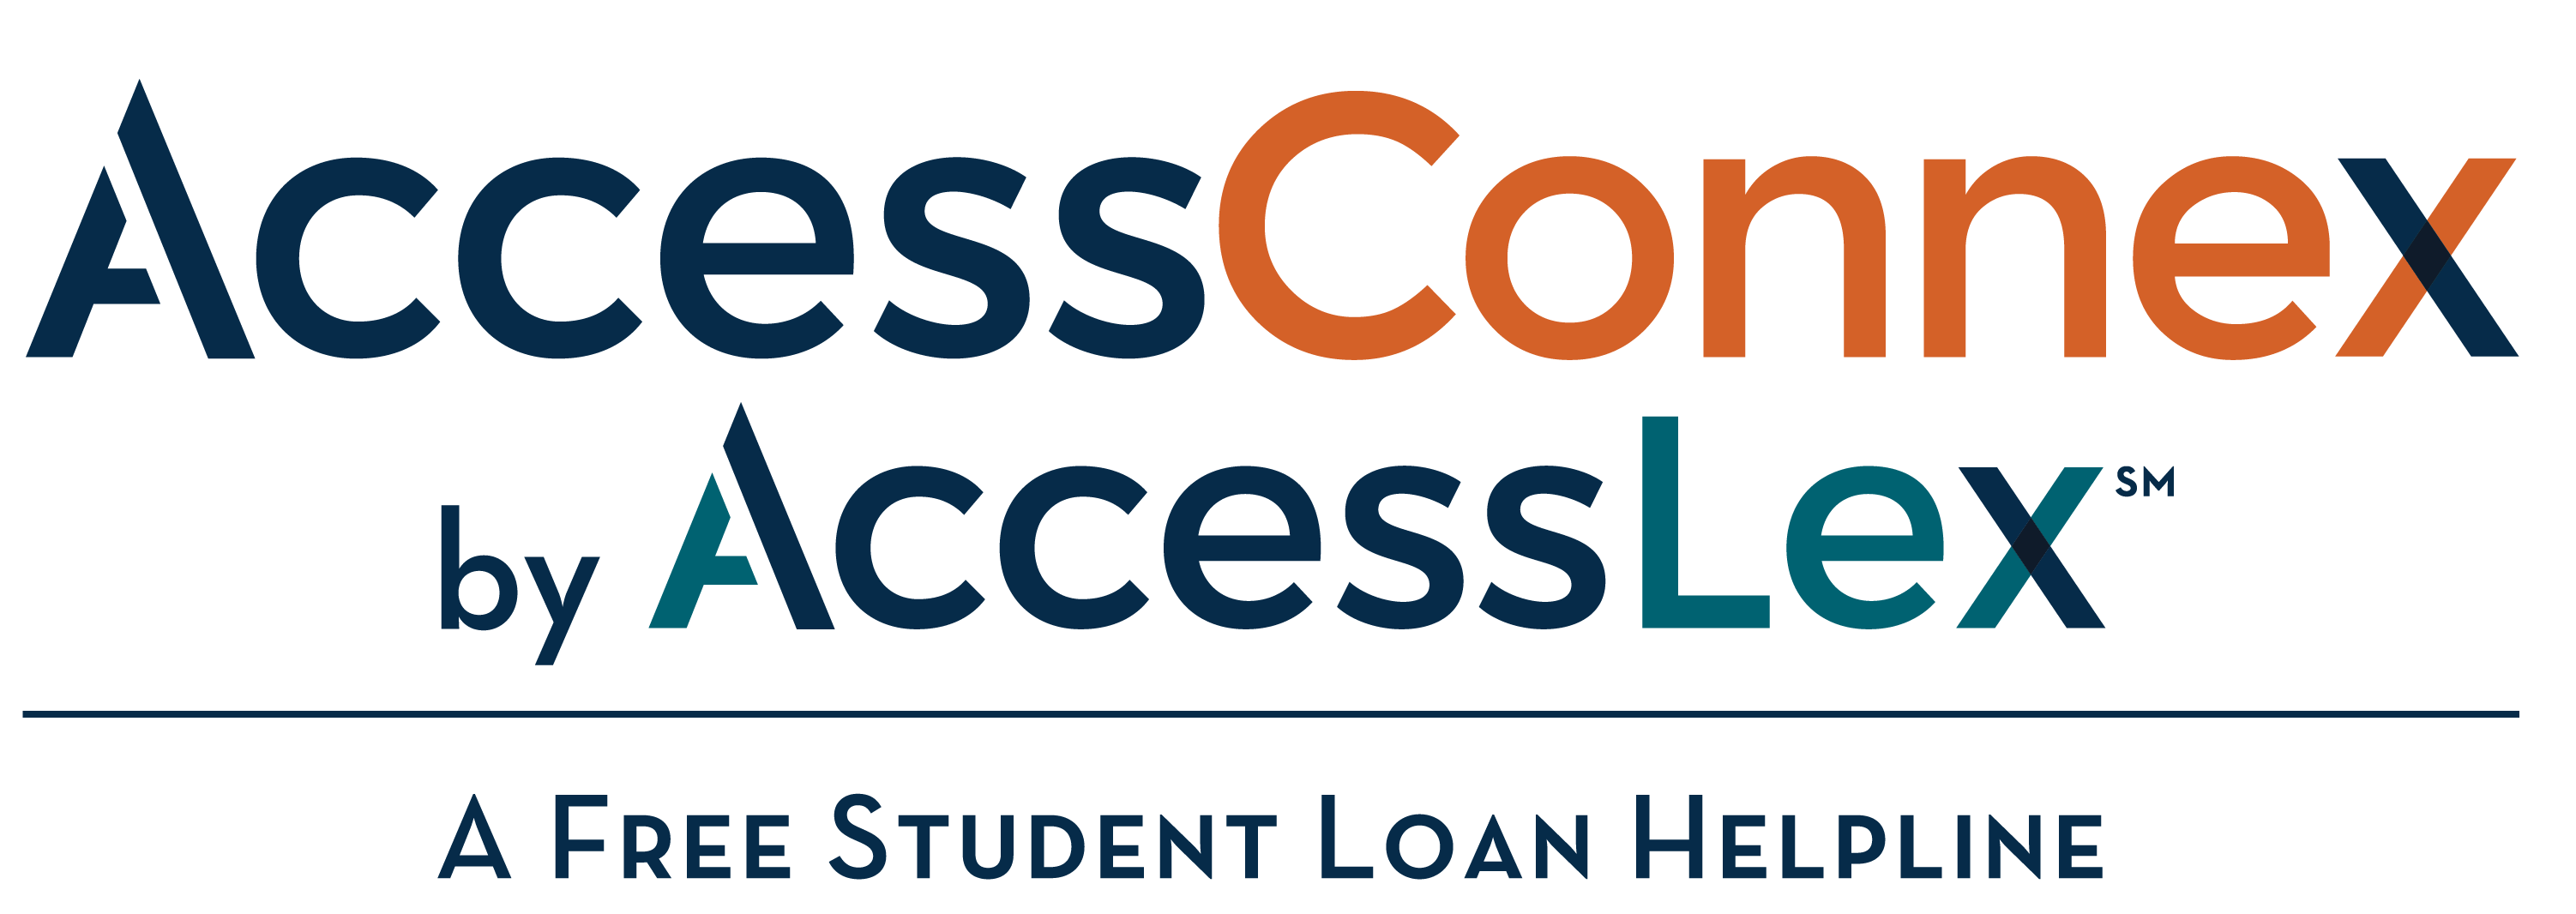 AccessConnex by AccessLex